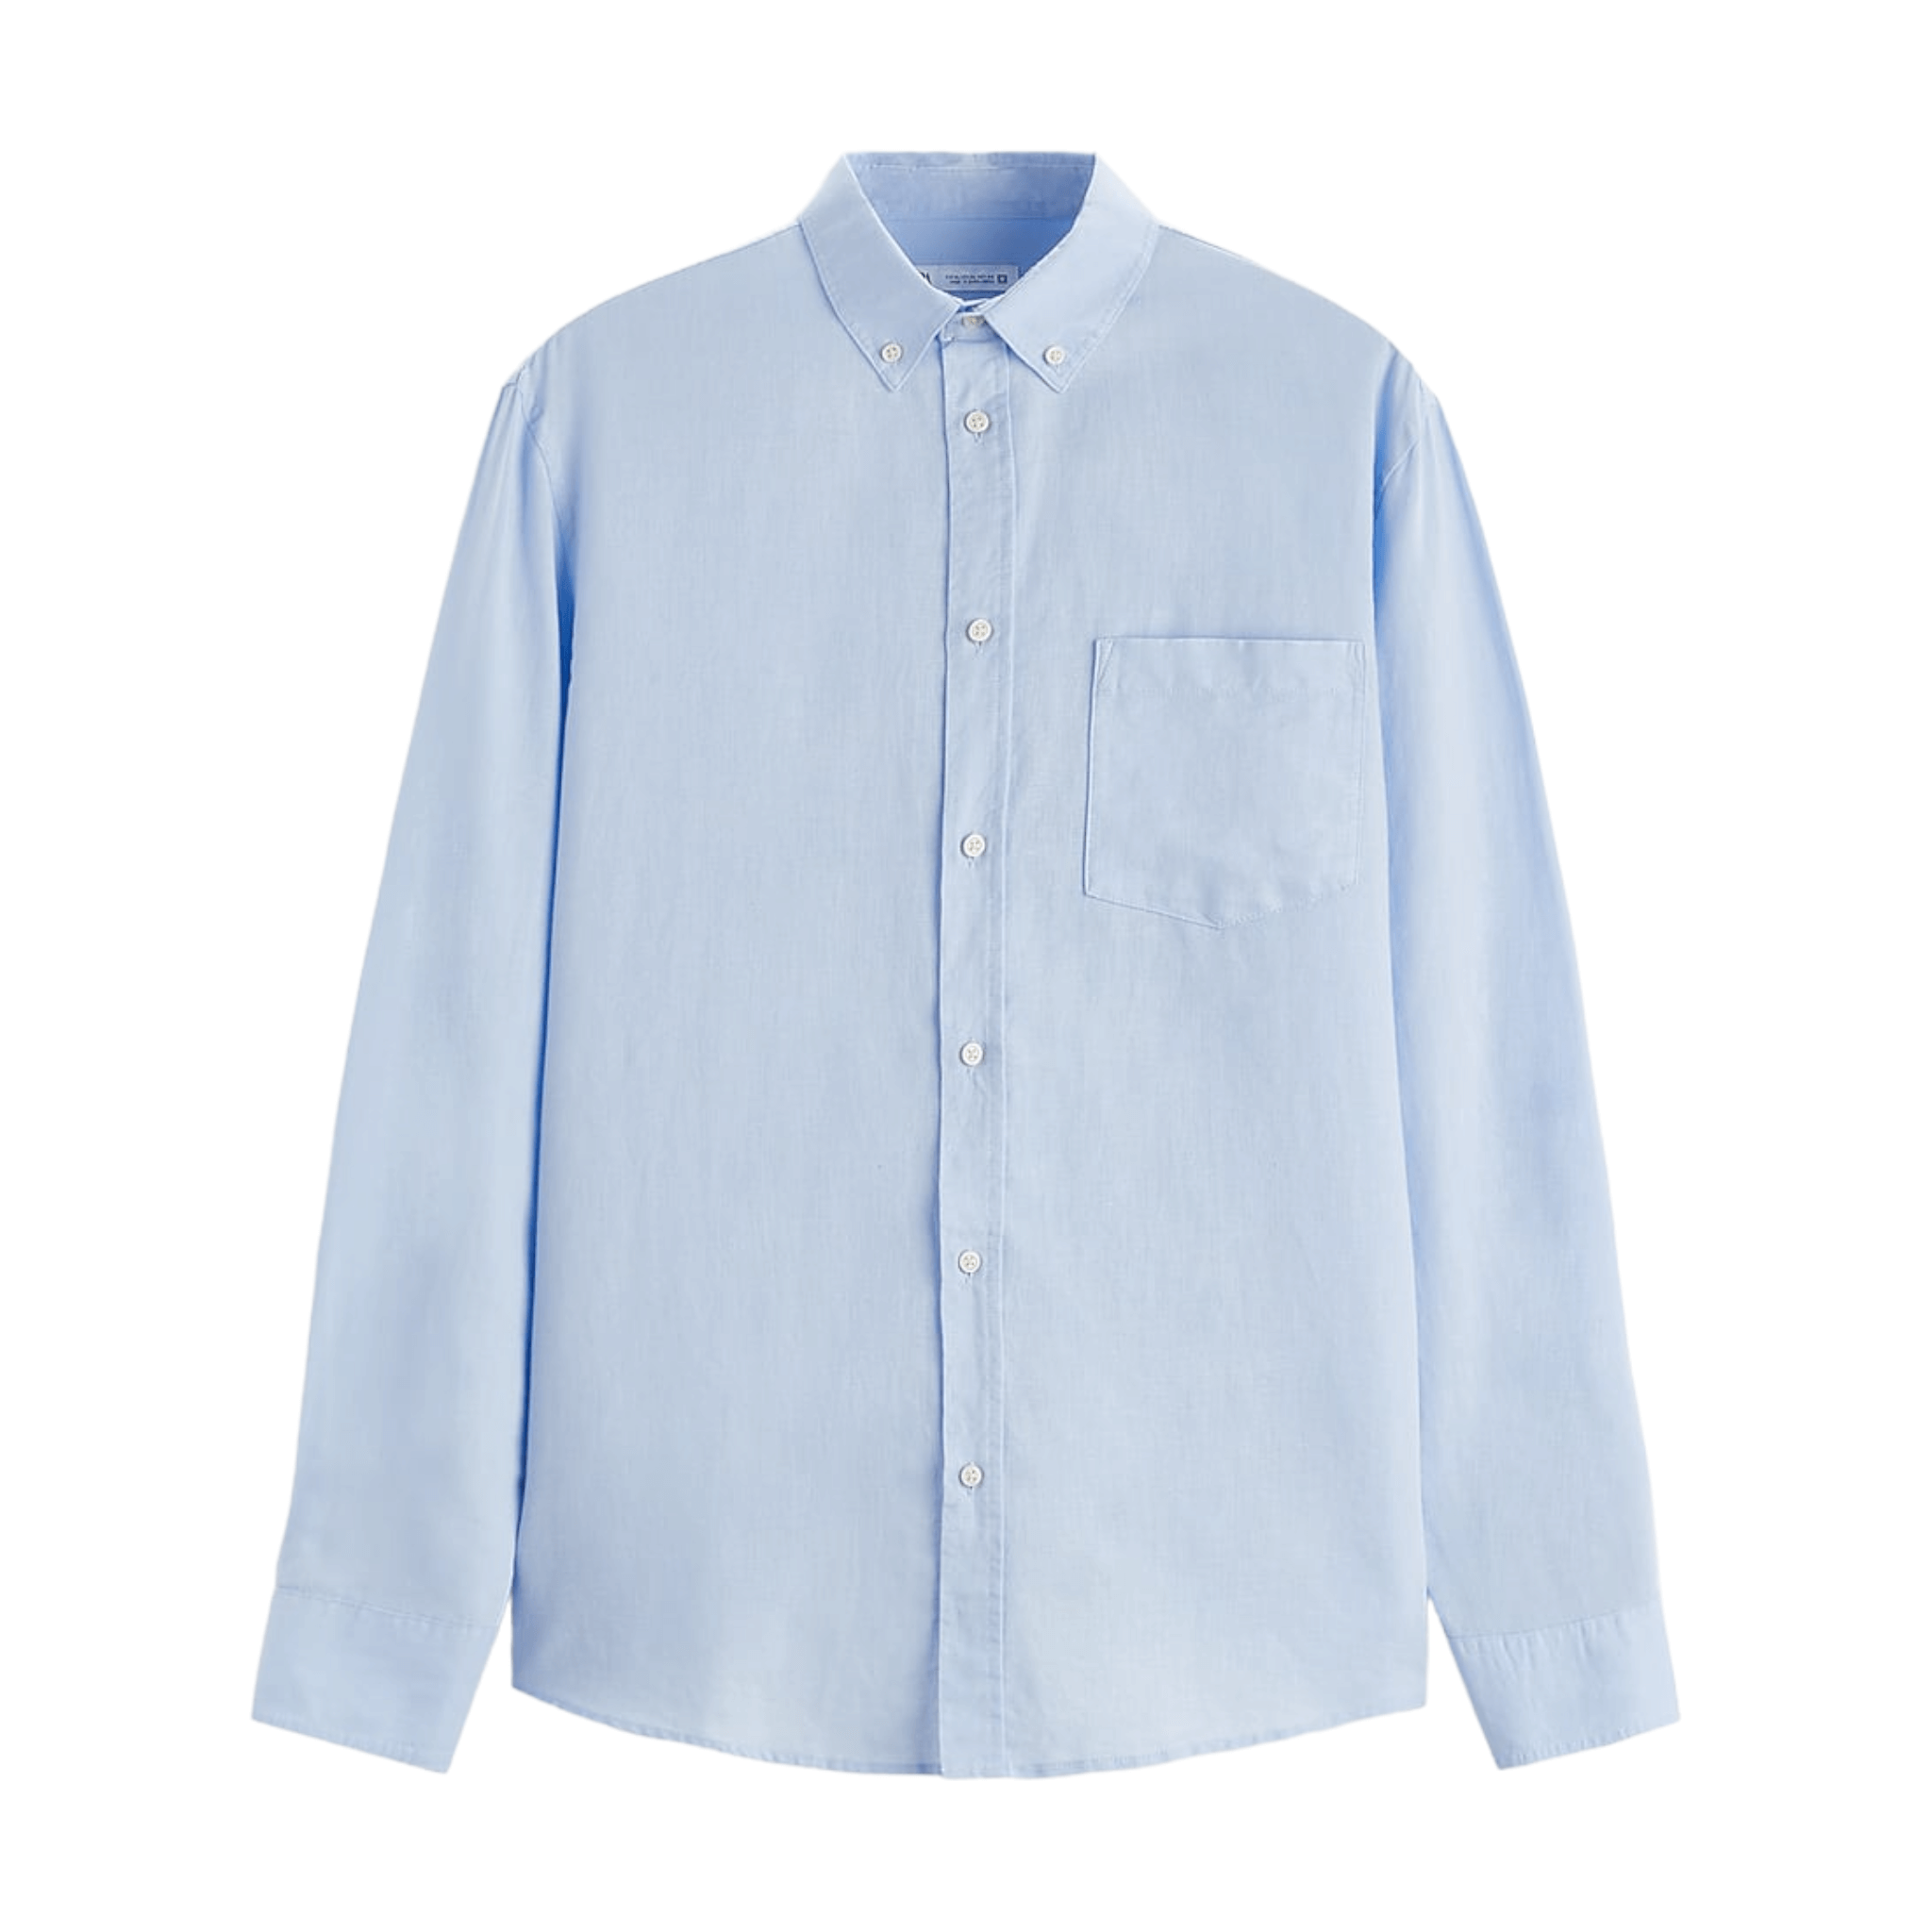 Рубашка Zara Cotton - Linen, голубой рубашка zara linen cropped белый